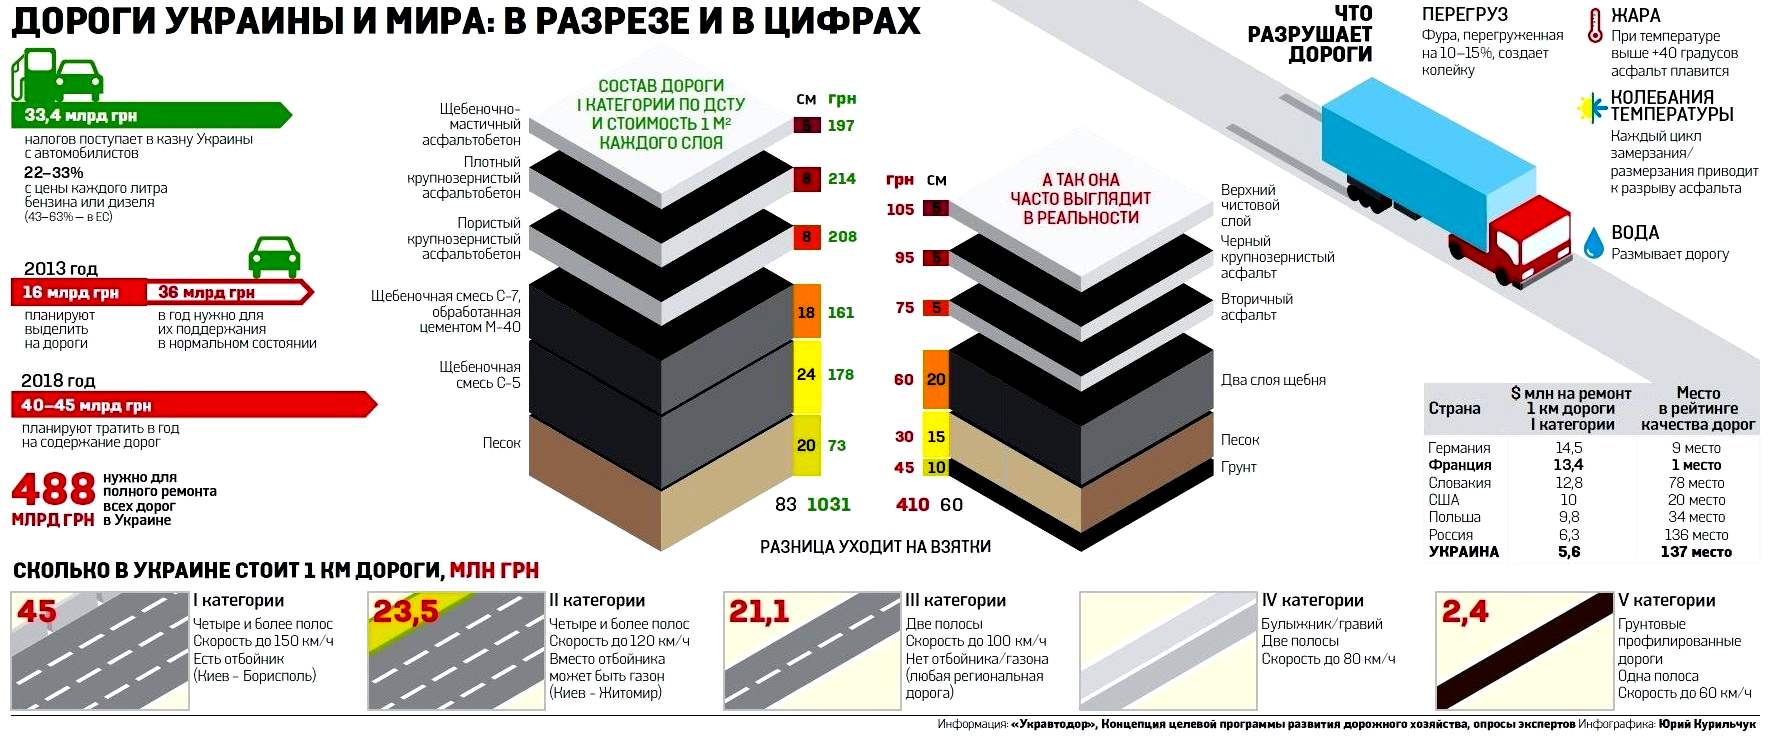 Украинские дороги в цифрах. Кликните по изображению для увеличения